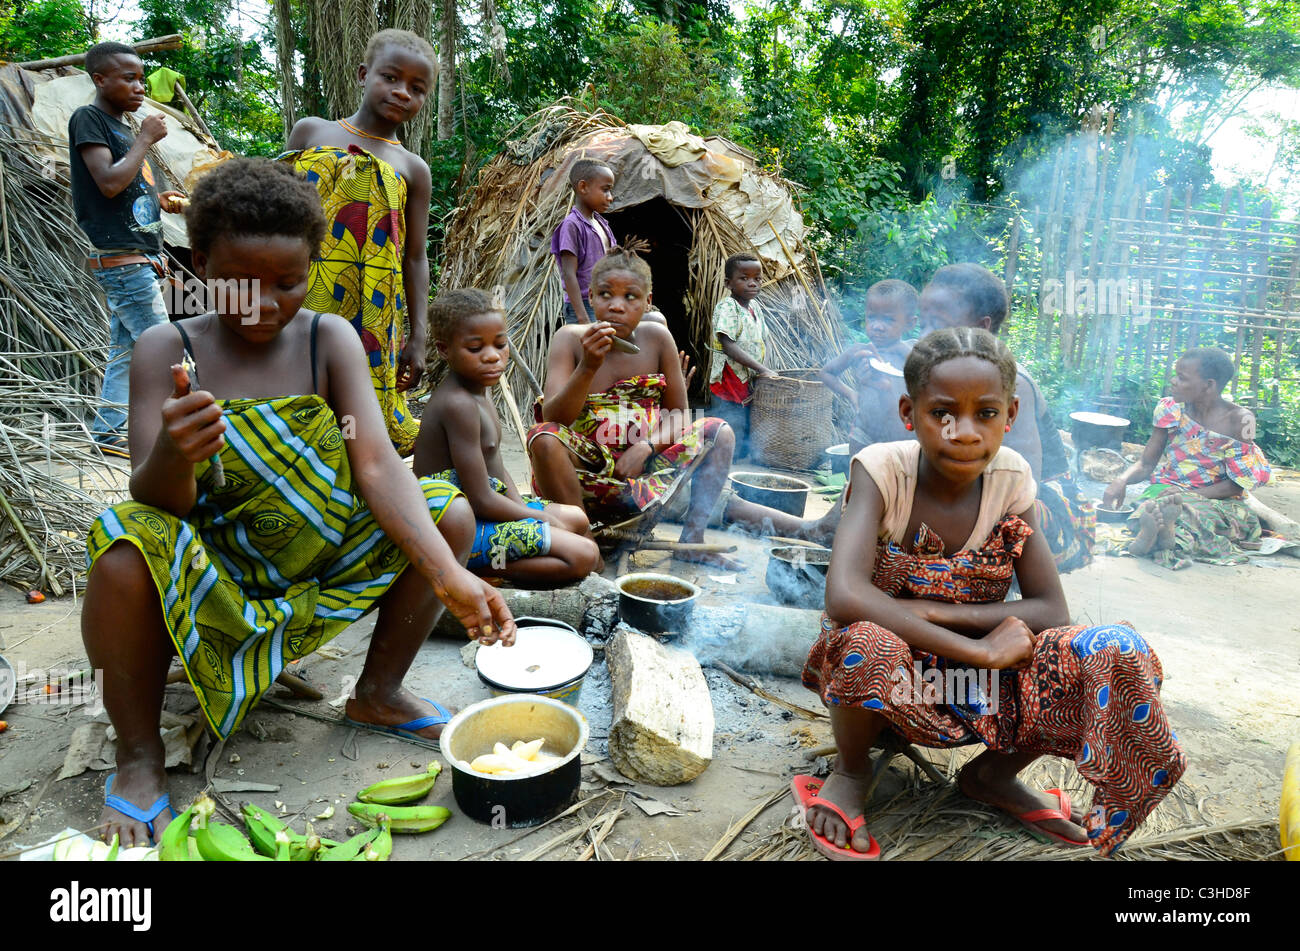 Nomadische Mbuti-Pygmäen leben in Ituri Dschungel des Kongo-Becken in der Demokratischen Republik Kongo. Einige Regeln in der Nähe von Städten. Stockfoto